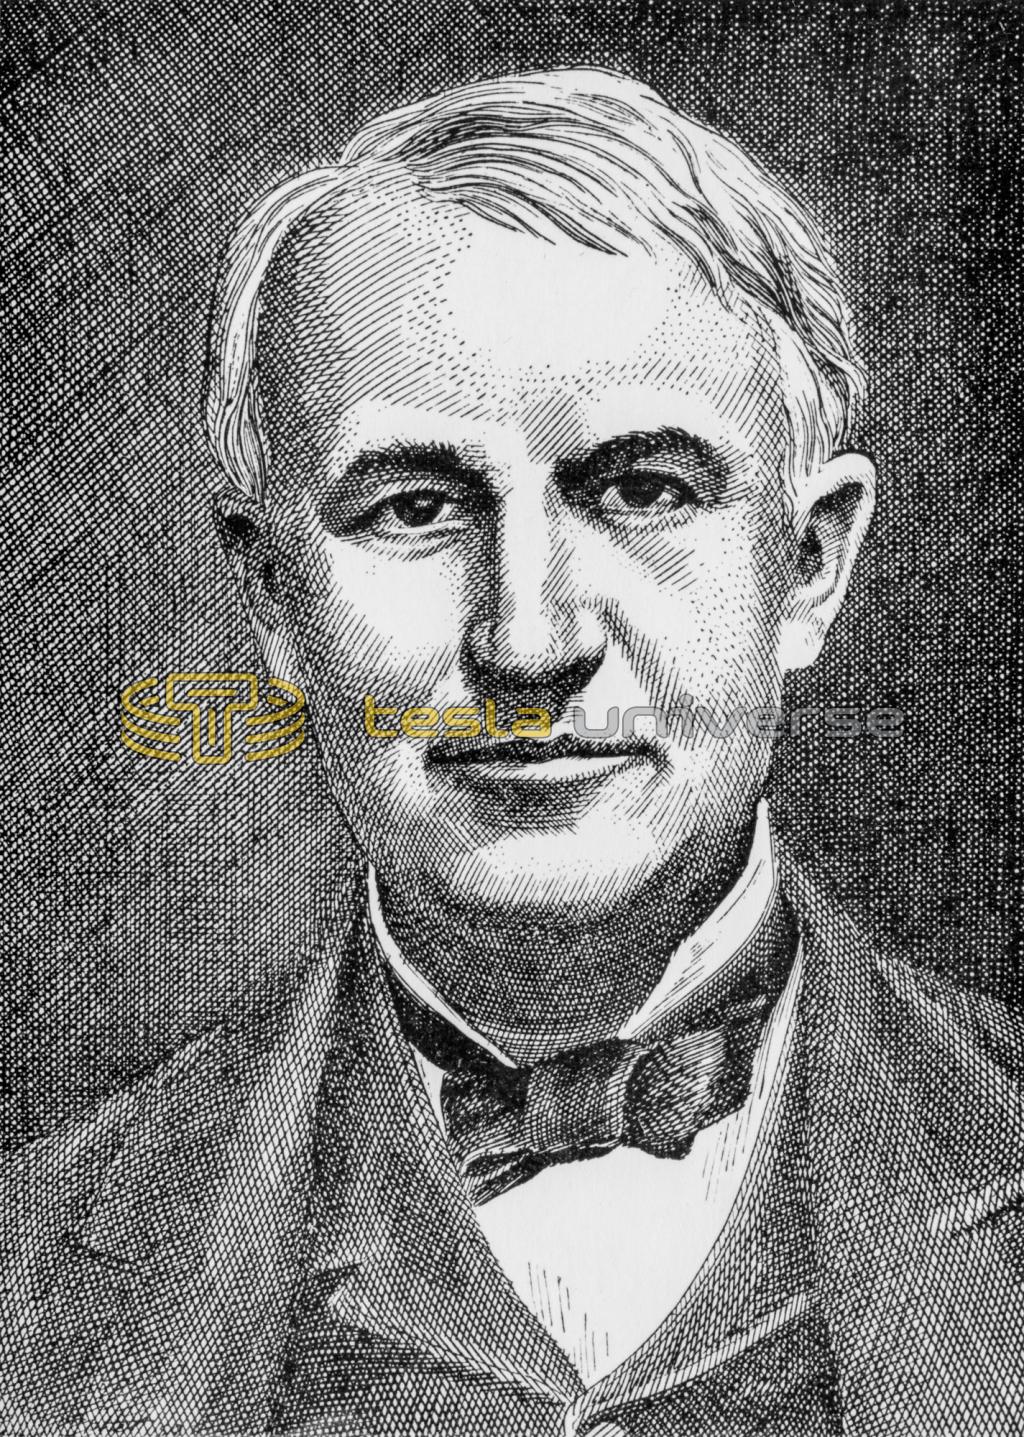 Sketch of Thomas Alva Edison.